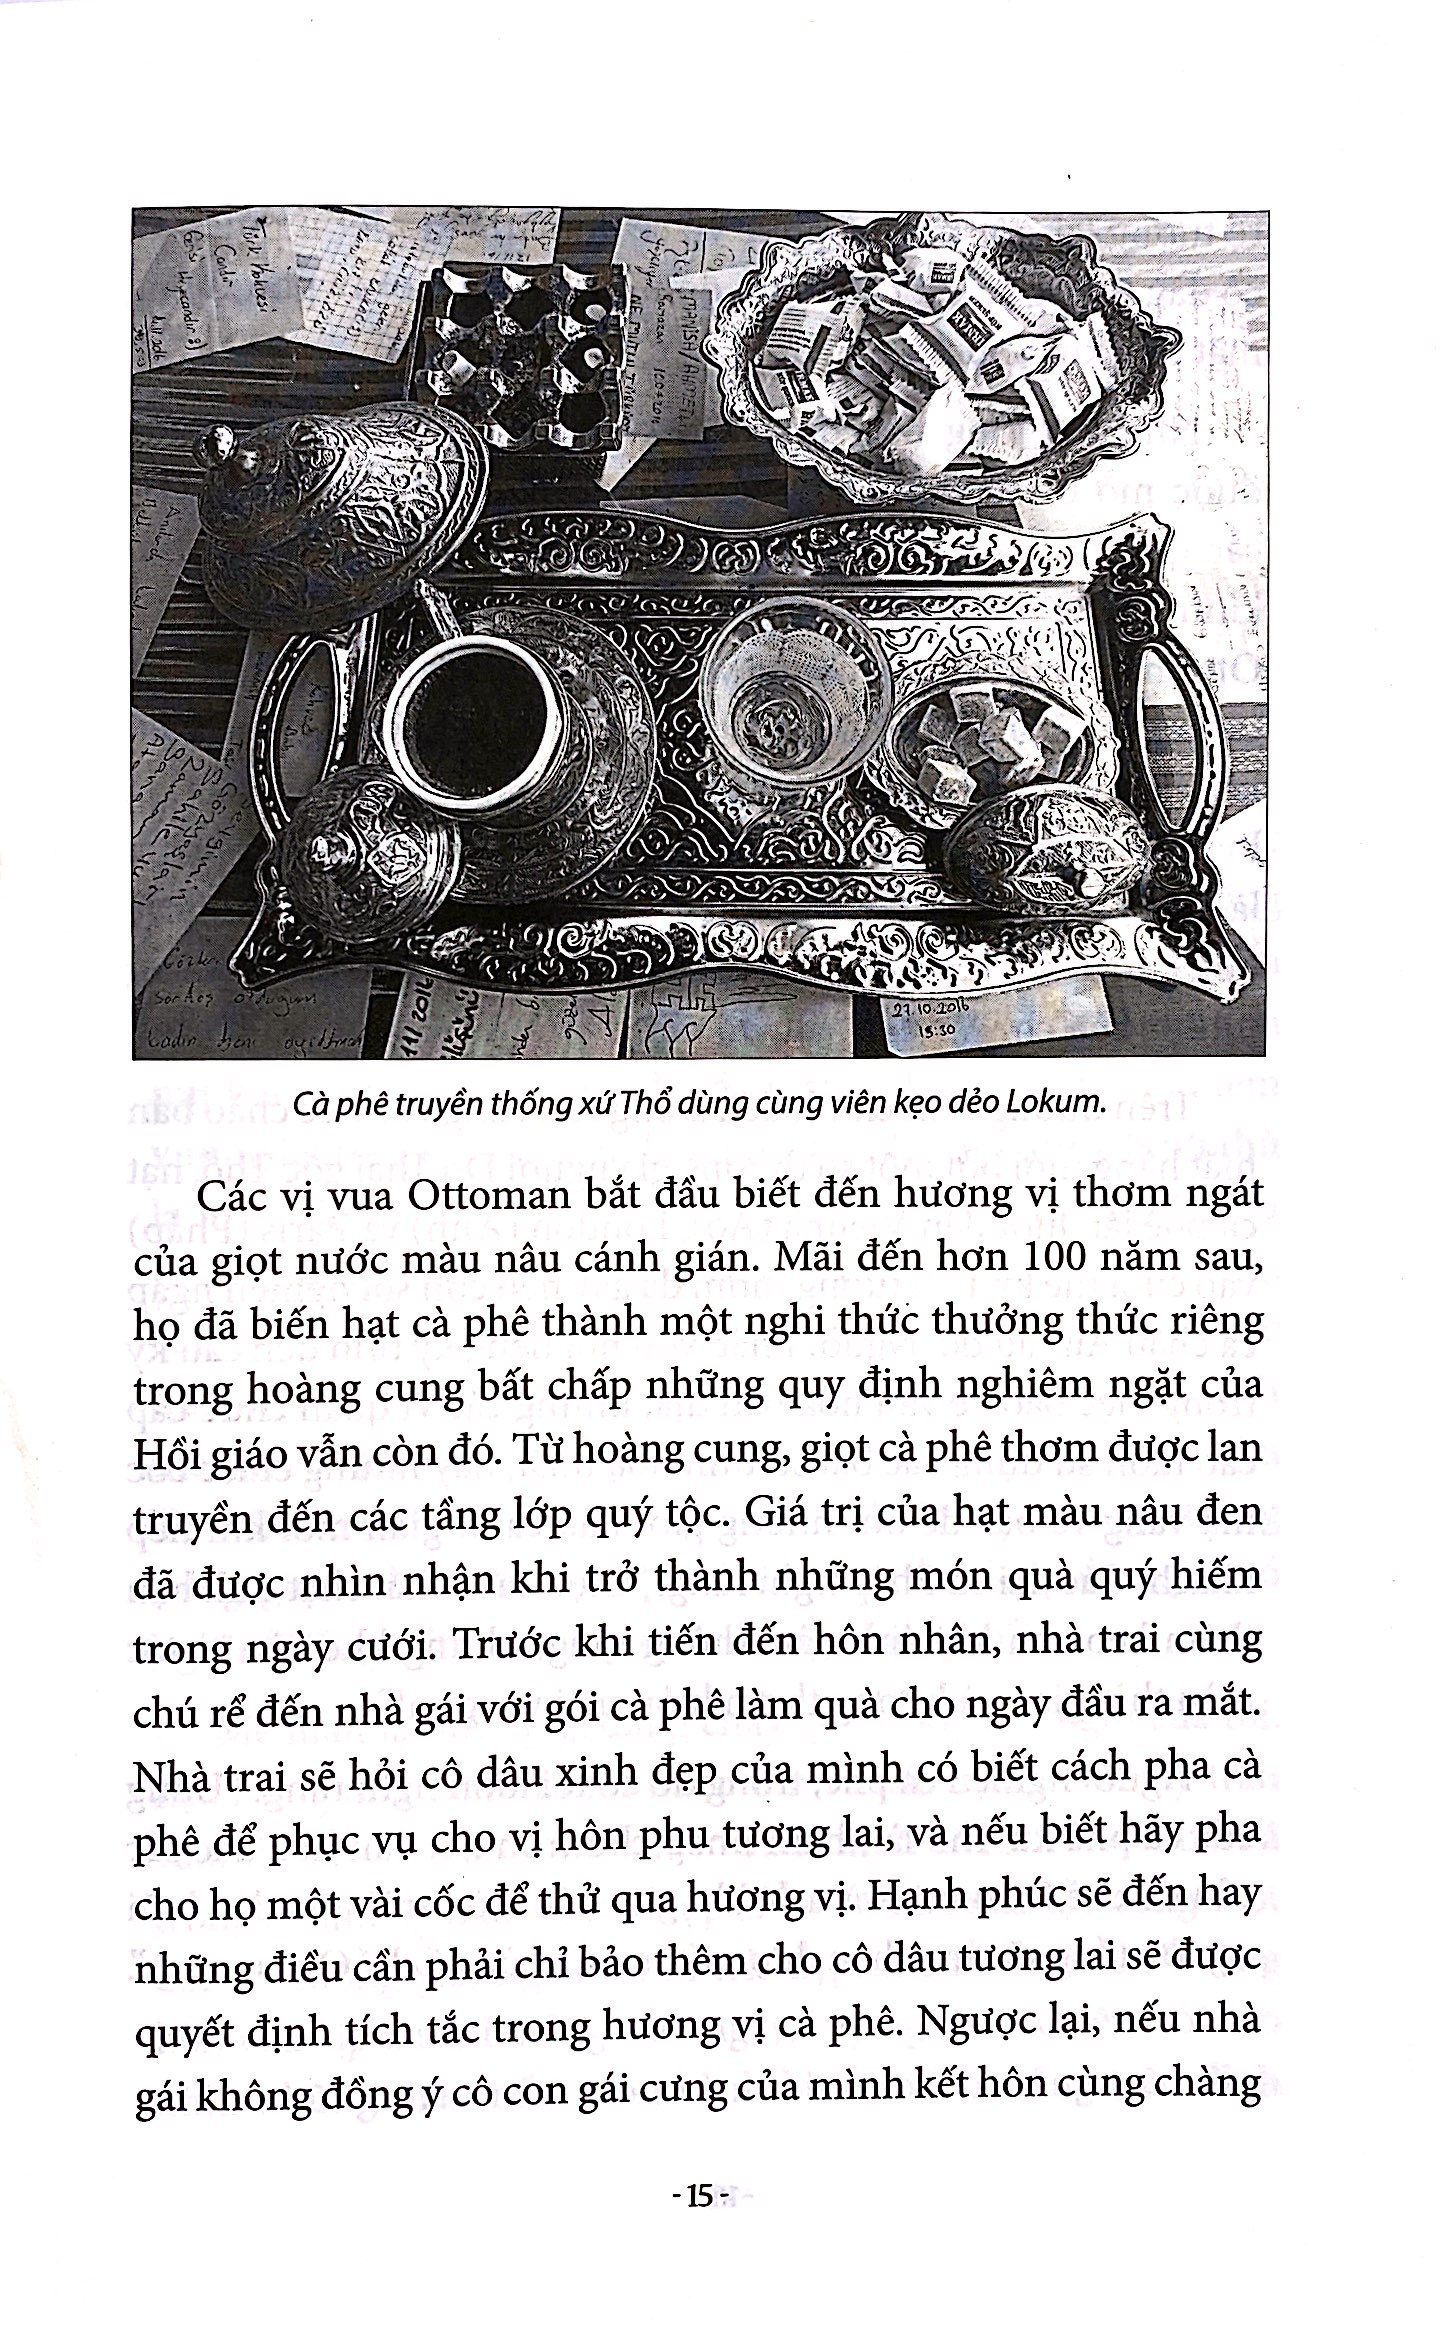 Giọt Cà Phê Thơm Ottoman PDF